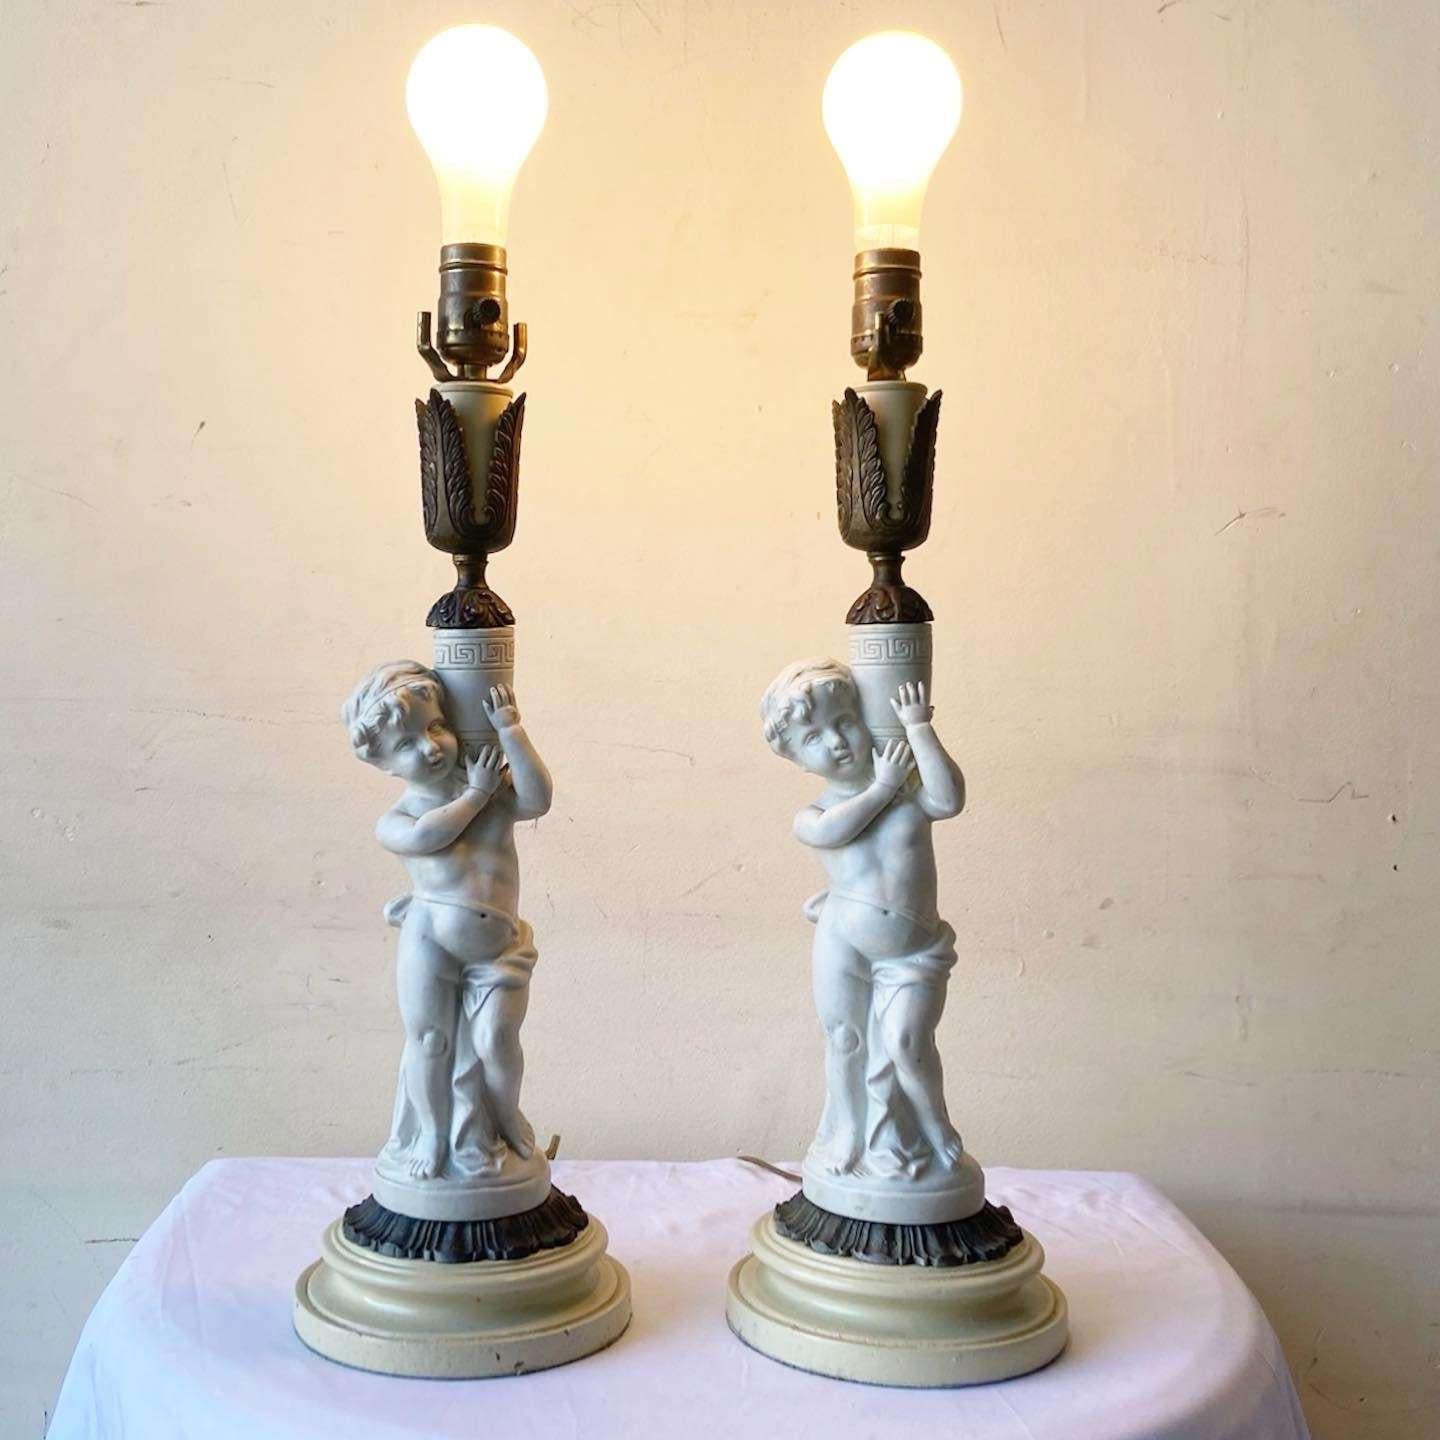 Exceptionnelle paire de lampes de table chérubin grec en céramique vintage. Un accent en laiton est placé sous le chérubin et au-dessus du vase qu'il tient.

Éclairage à 3 voies.
